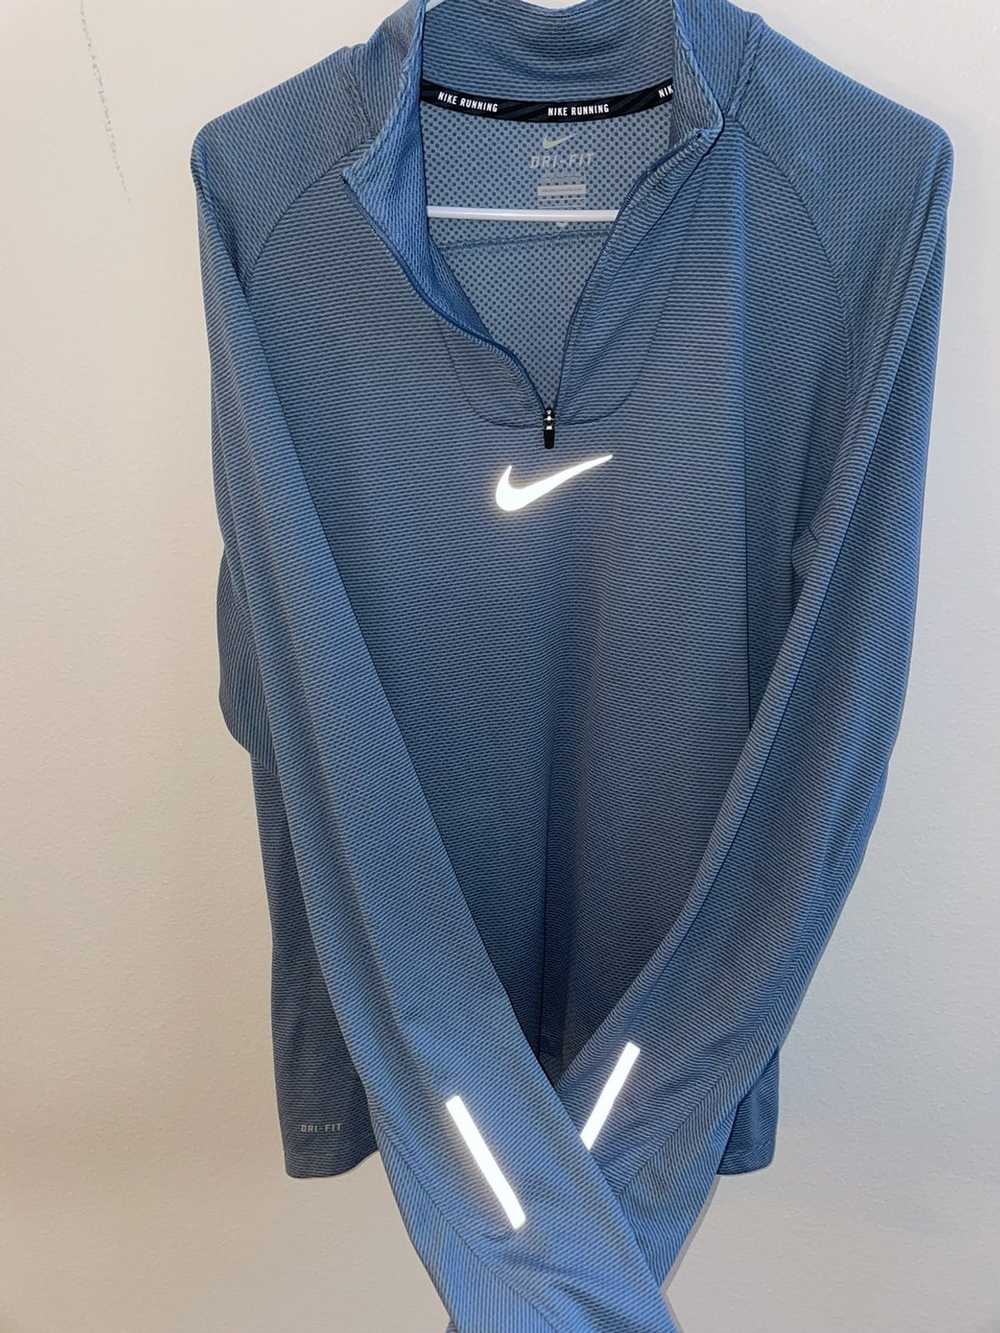 Nike Nike Running L/S shirt - image 3